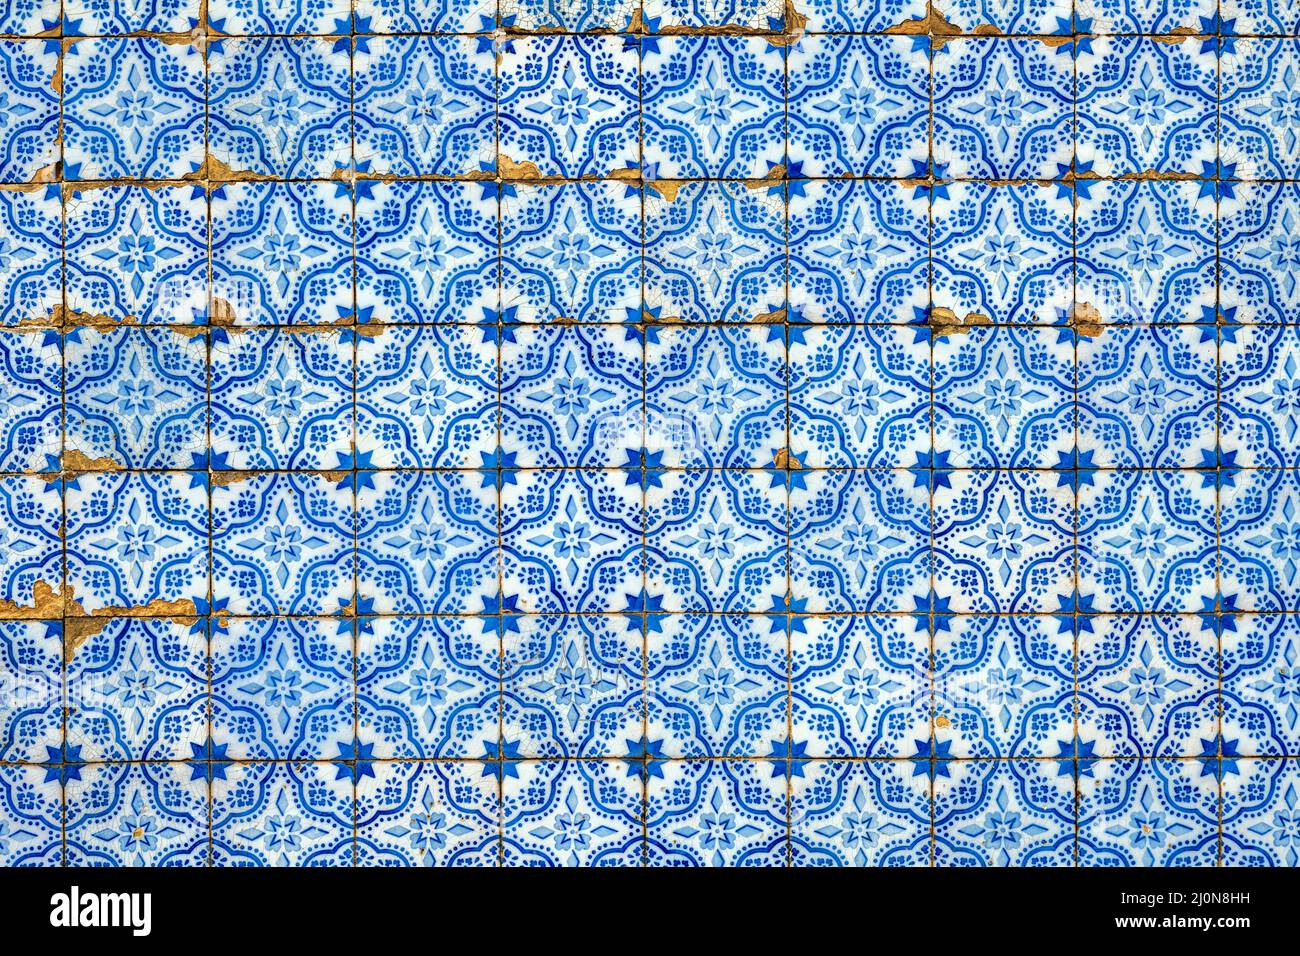 Arrière-plan de tuiles typiques bleues portugaises Banque D'Images